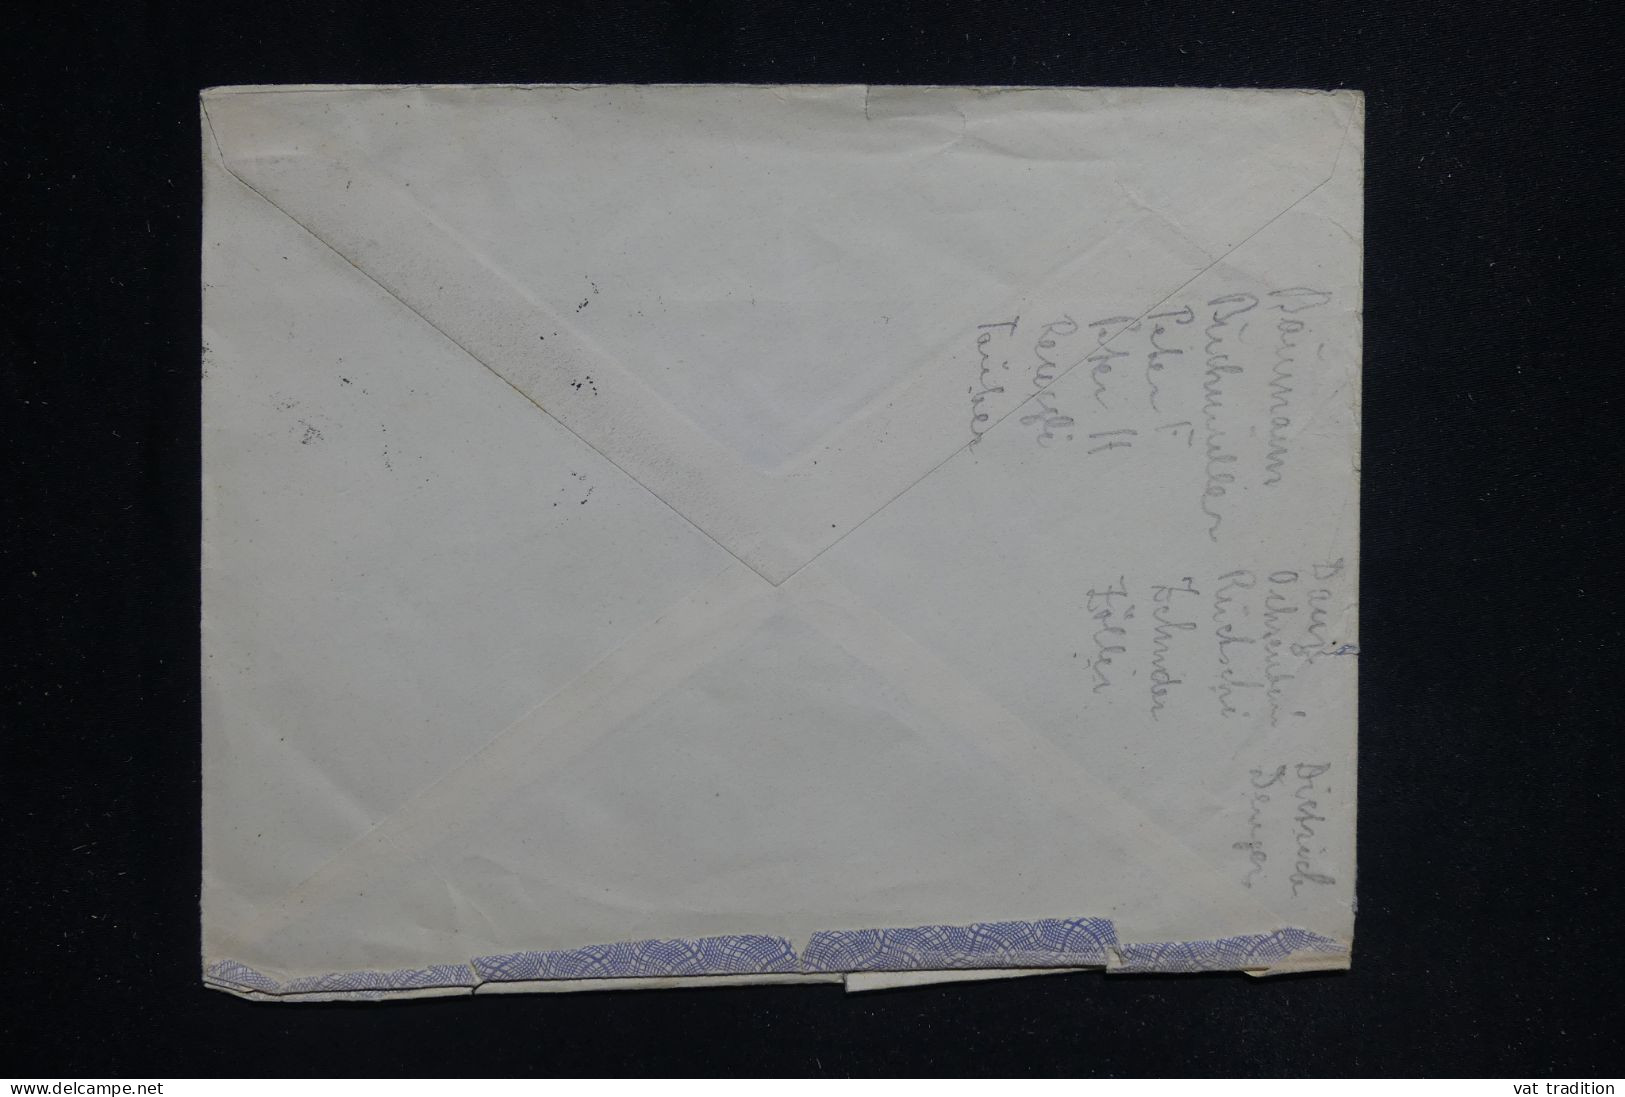 TURQUIE - Enveloppe Commerciale De Istanbul Pour La Suisse En 1950 - L 144709 - Briefe U. Dokumente